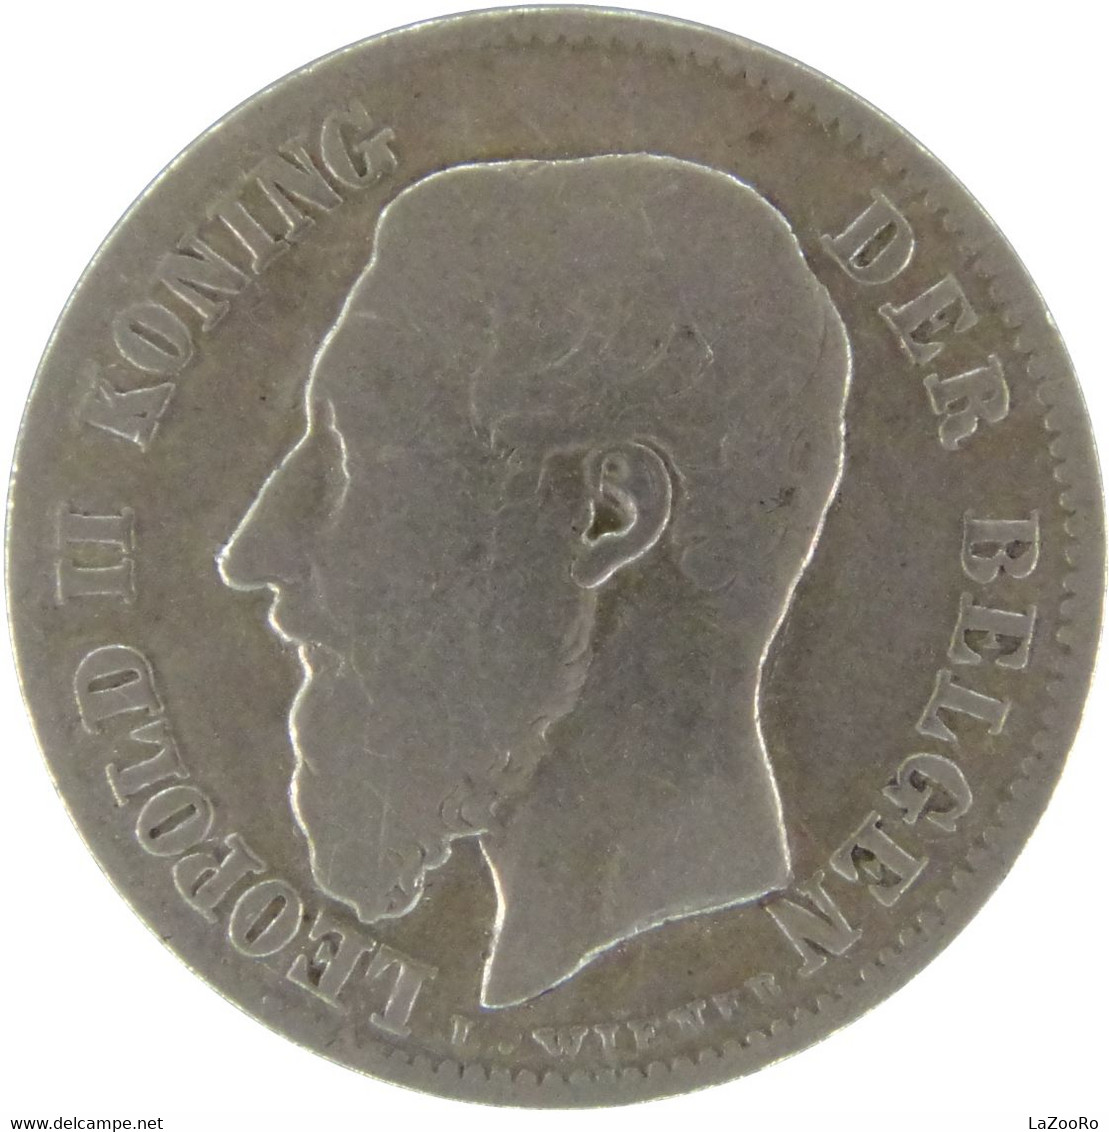 LaZooRo: Belgium 50 Centimes 1898 F / VF - Silver - 50 Centimes